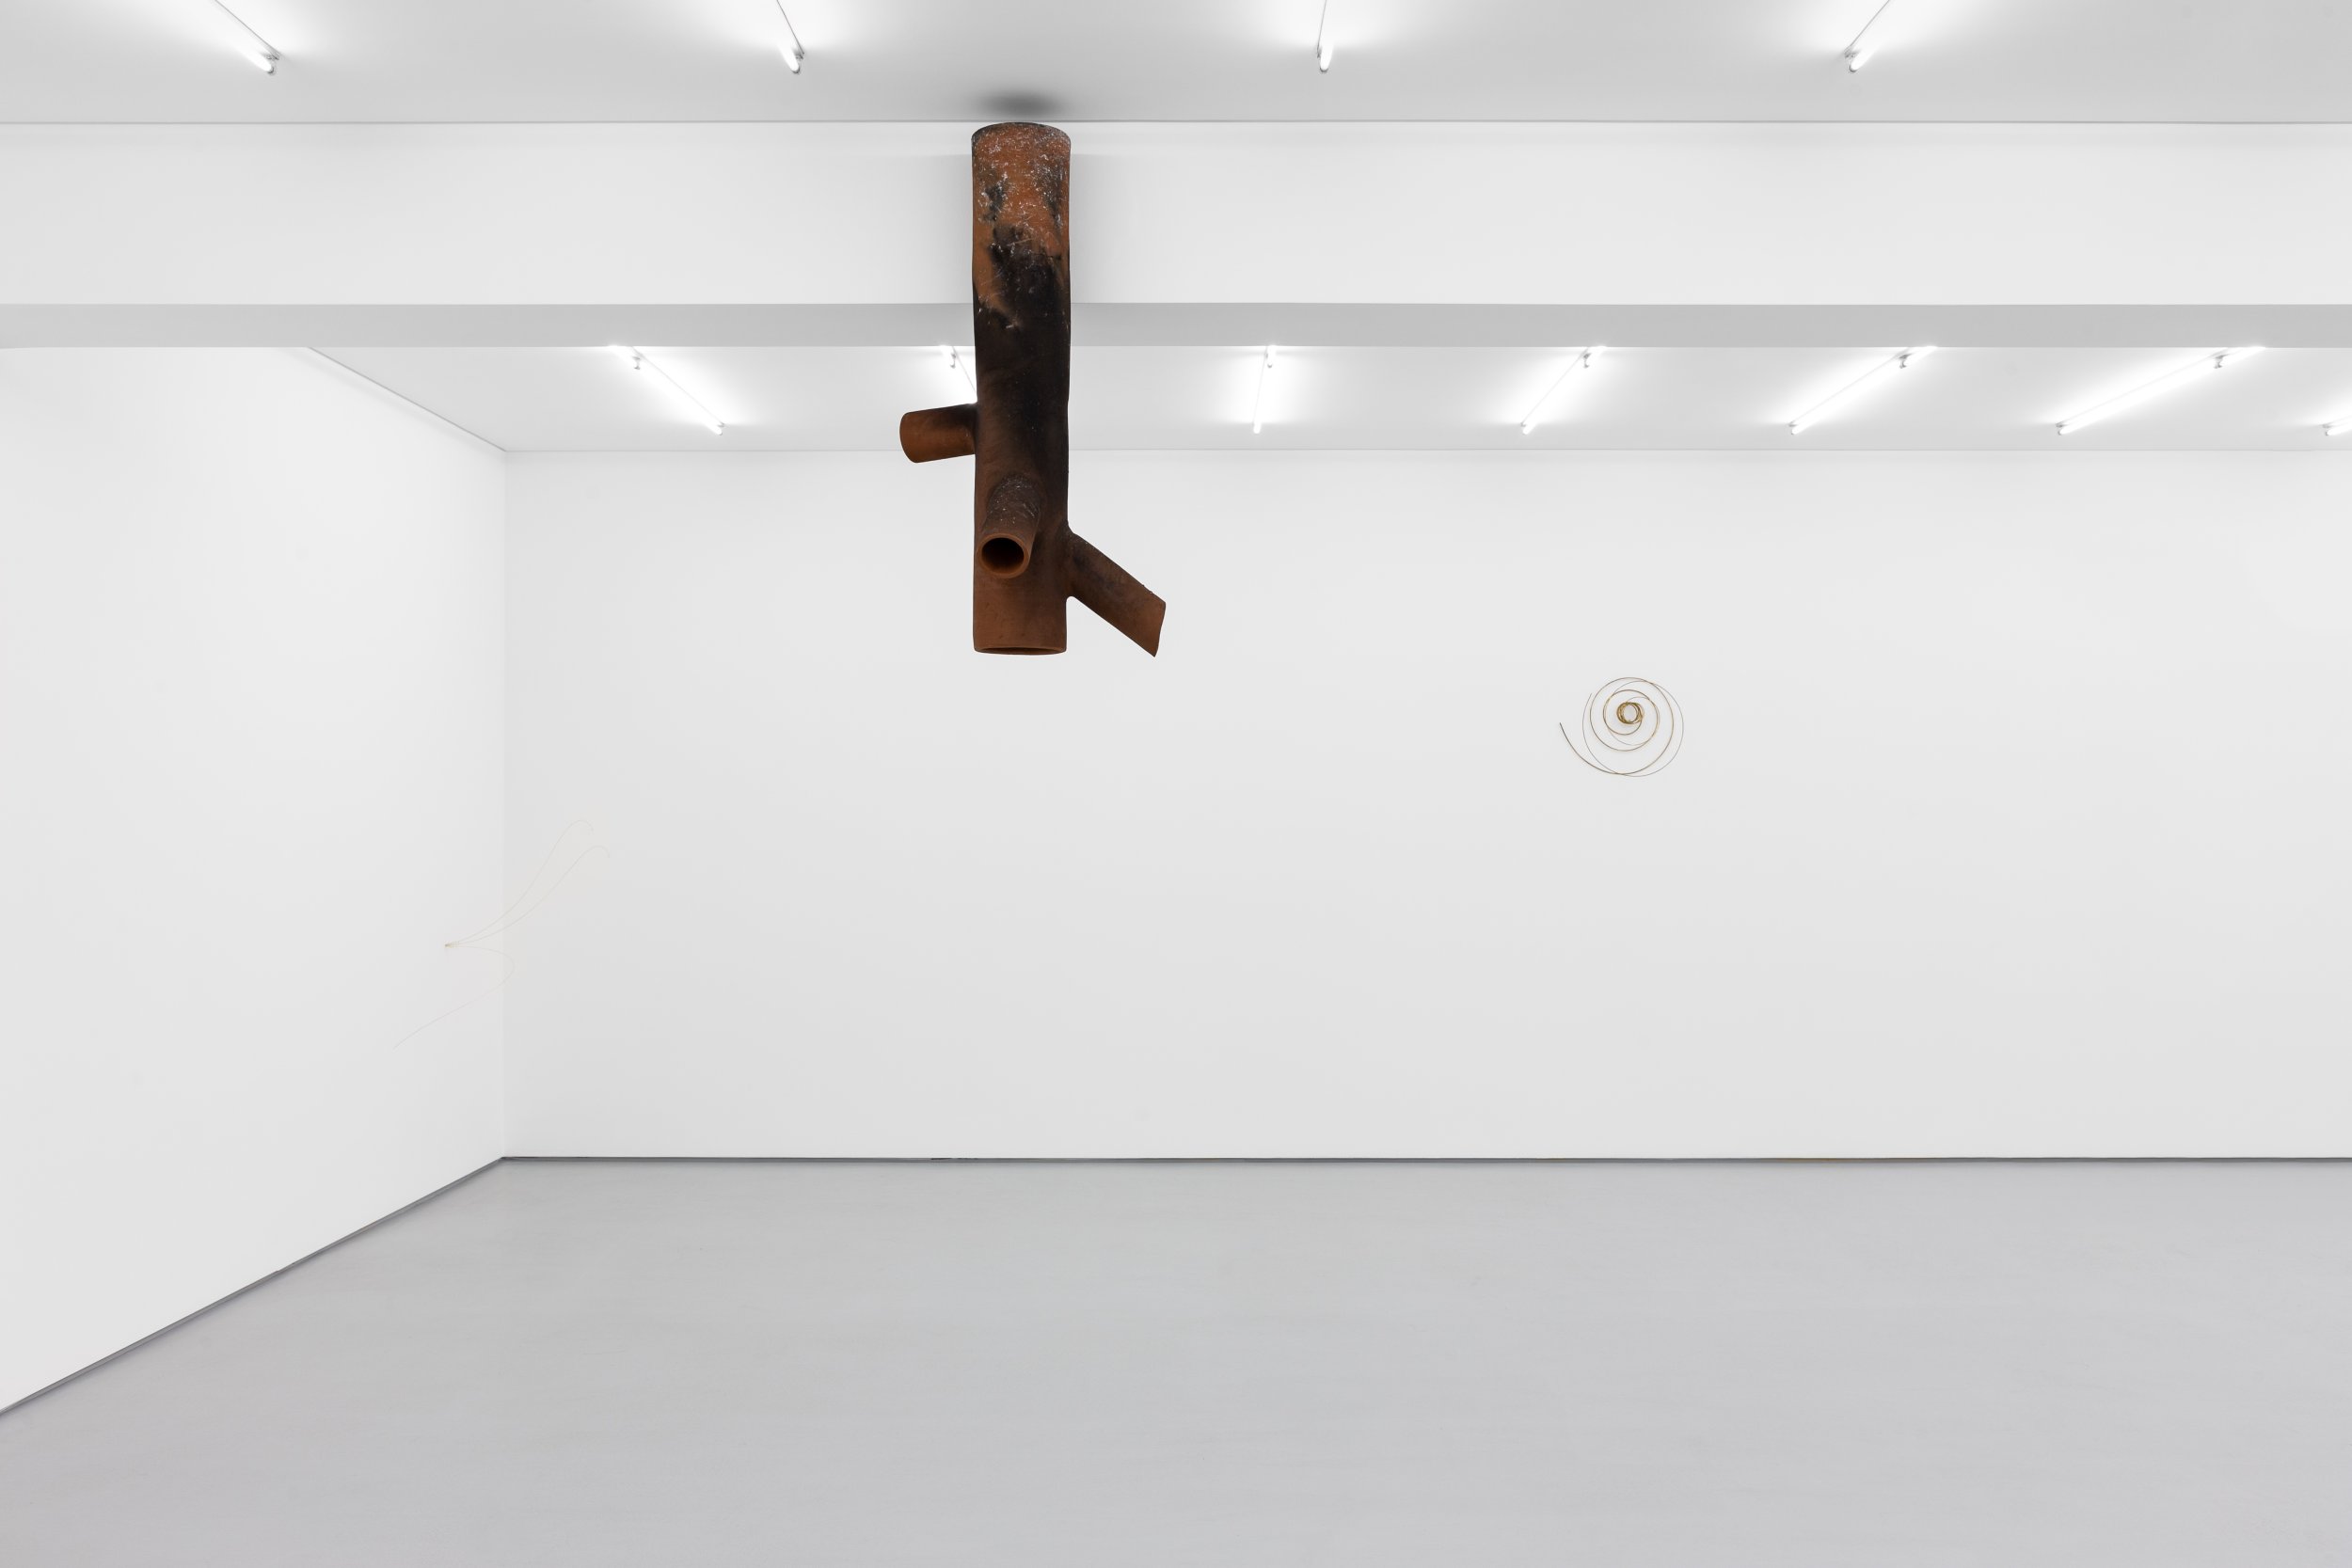 Exhibition view: WIND DREAMS, Joana Escoval, Galeria Vera Cortês, 2022
